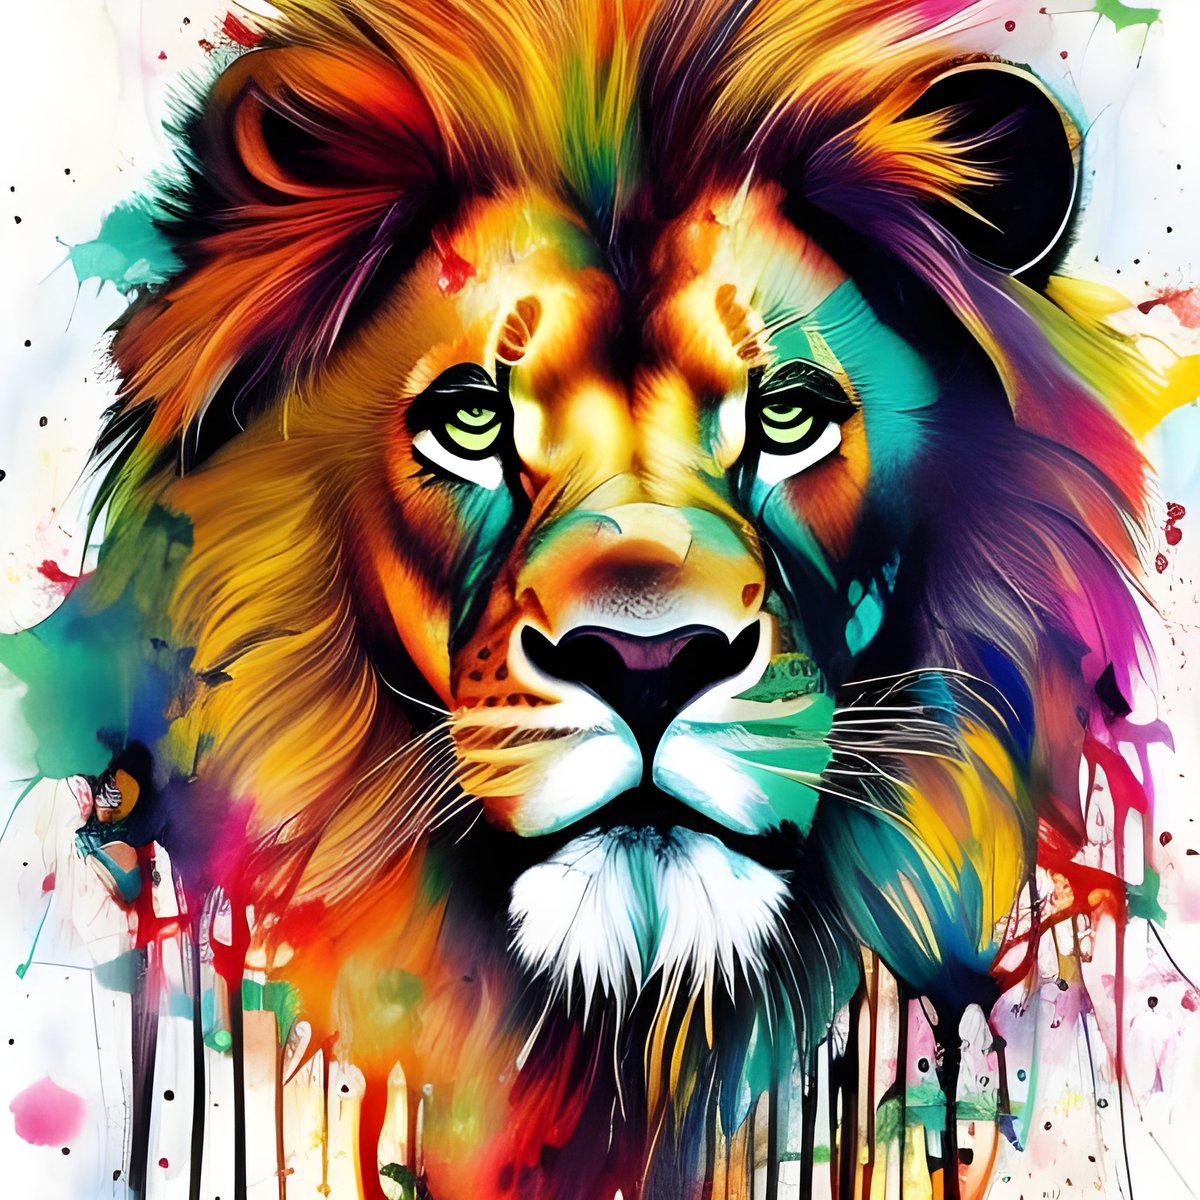 The King
@nightcafestudio #texttoimage #stablediffusion #digitalart #aiartist #lion #lionking #splashart #oilpain #kingofjungle🦁 #braveandstrong #warriorlife